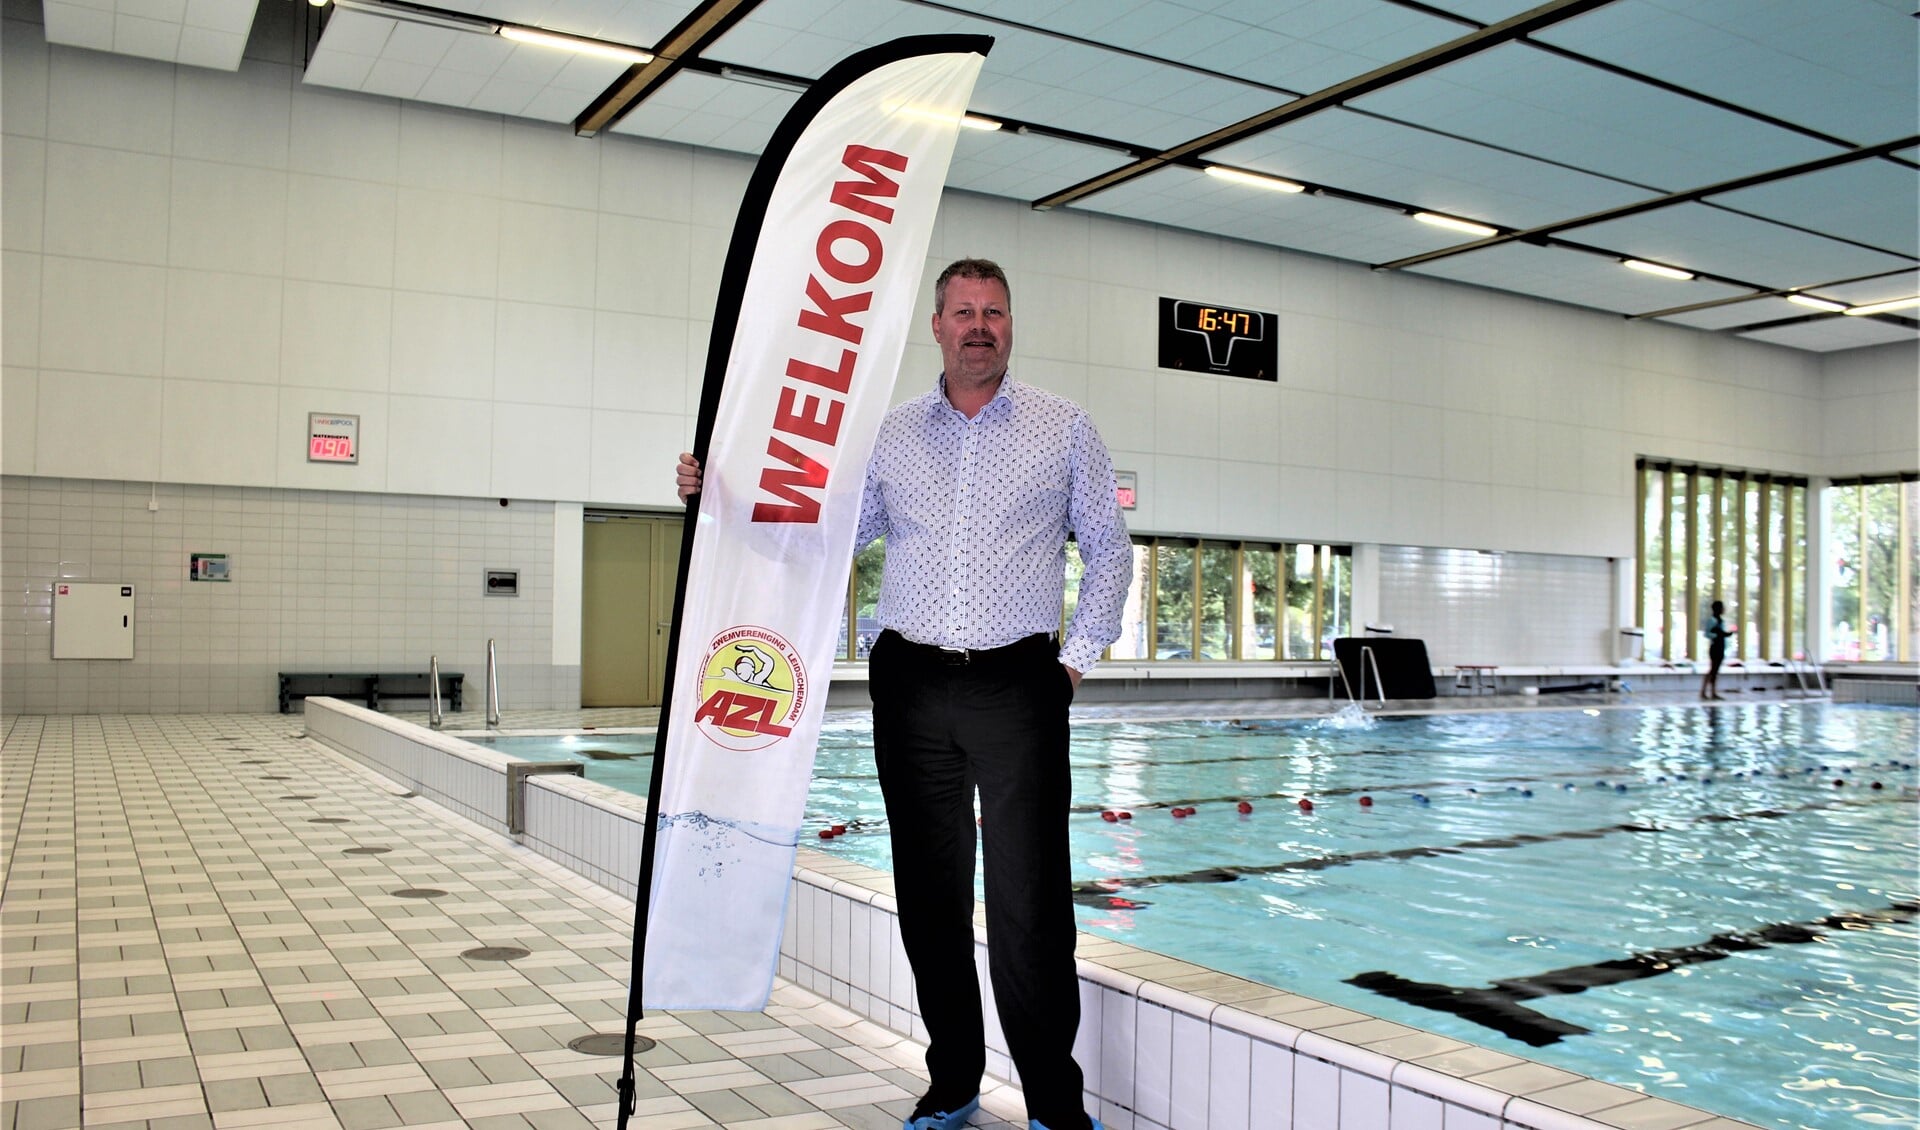 Voorzitter Michiel Schapers van de Algemene Zwemvereniging Leidschendam, die zelf al 25 jaar zweminstructeur is en instructeurs opleidt (foto/tekst: DJ).